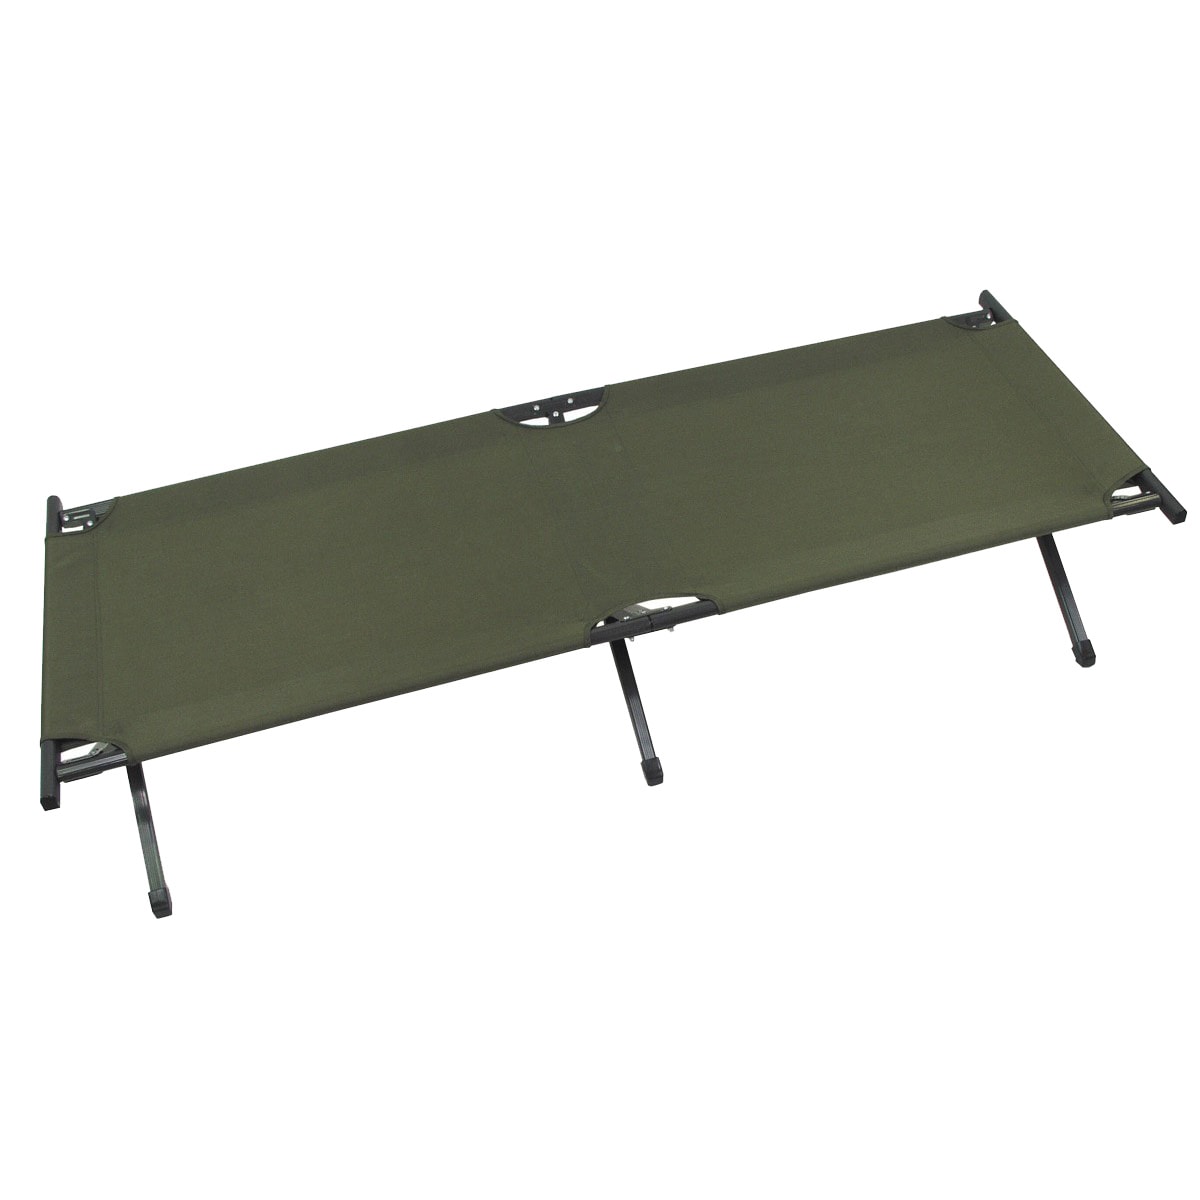 Розкладне польове ліжко MFH US Olive - 190 x 66 см